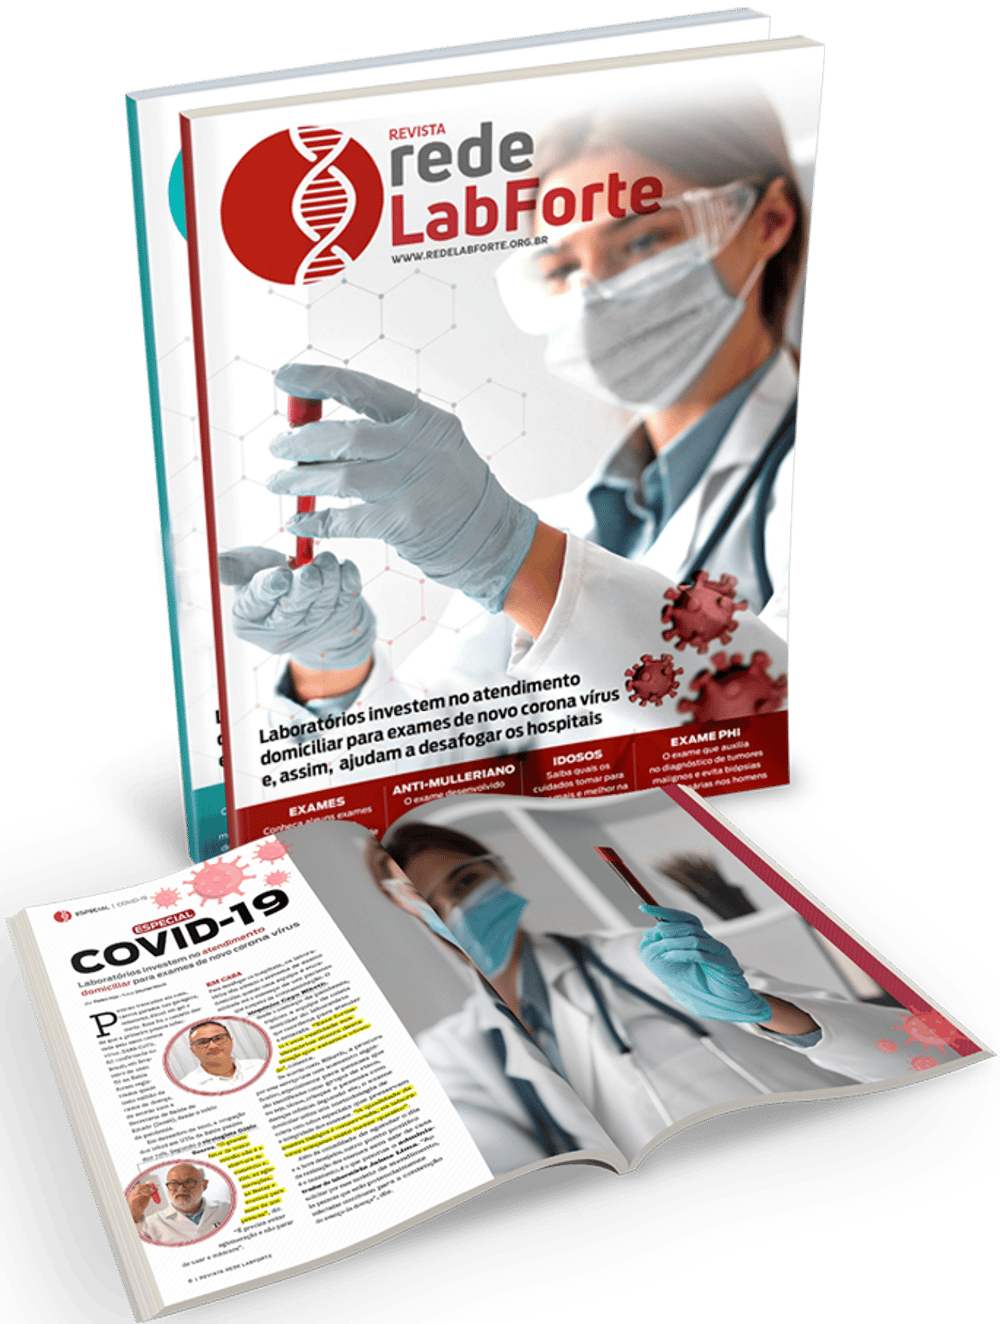 Publicação customizada para a Rede LabForte, uma Associação composta por mais de 40 dos principais laboratórios da Bahia. Conteúdos sobre saúde, cuidados, vacinas, exames laboratoriais e outros assuntos relacionados ao setor laboratorial.